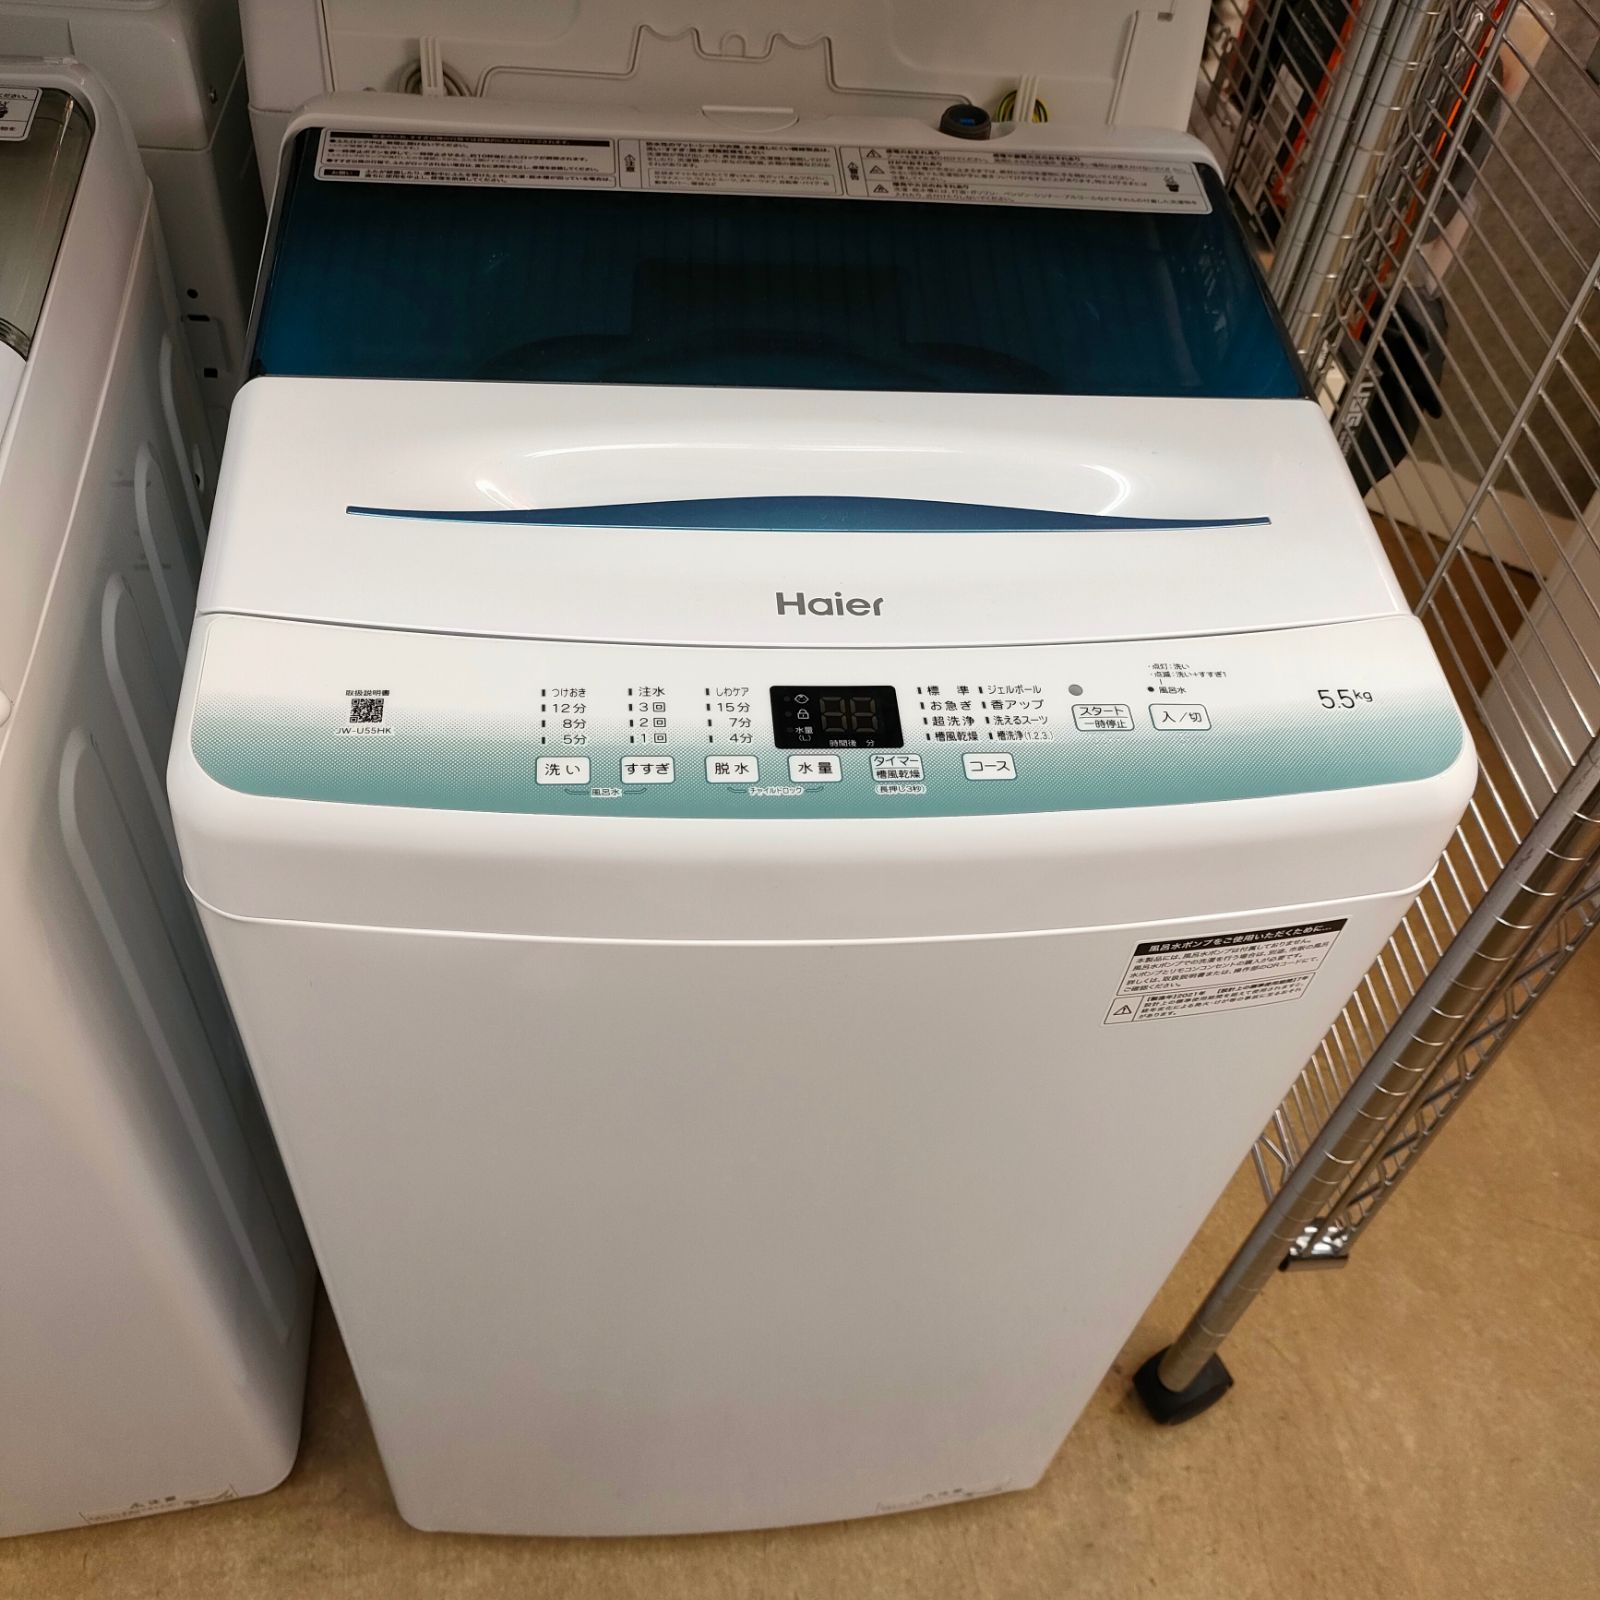 ハイアール 5.5kg洗濯機 2021年製 JW-U55HK【モノ市場東浦店】41 